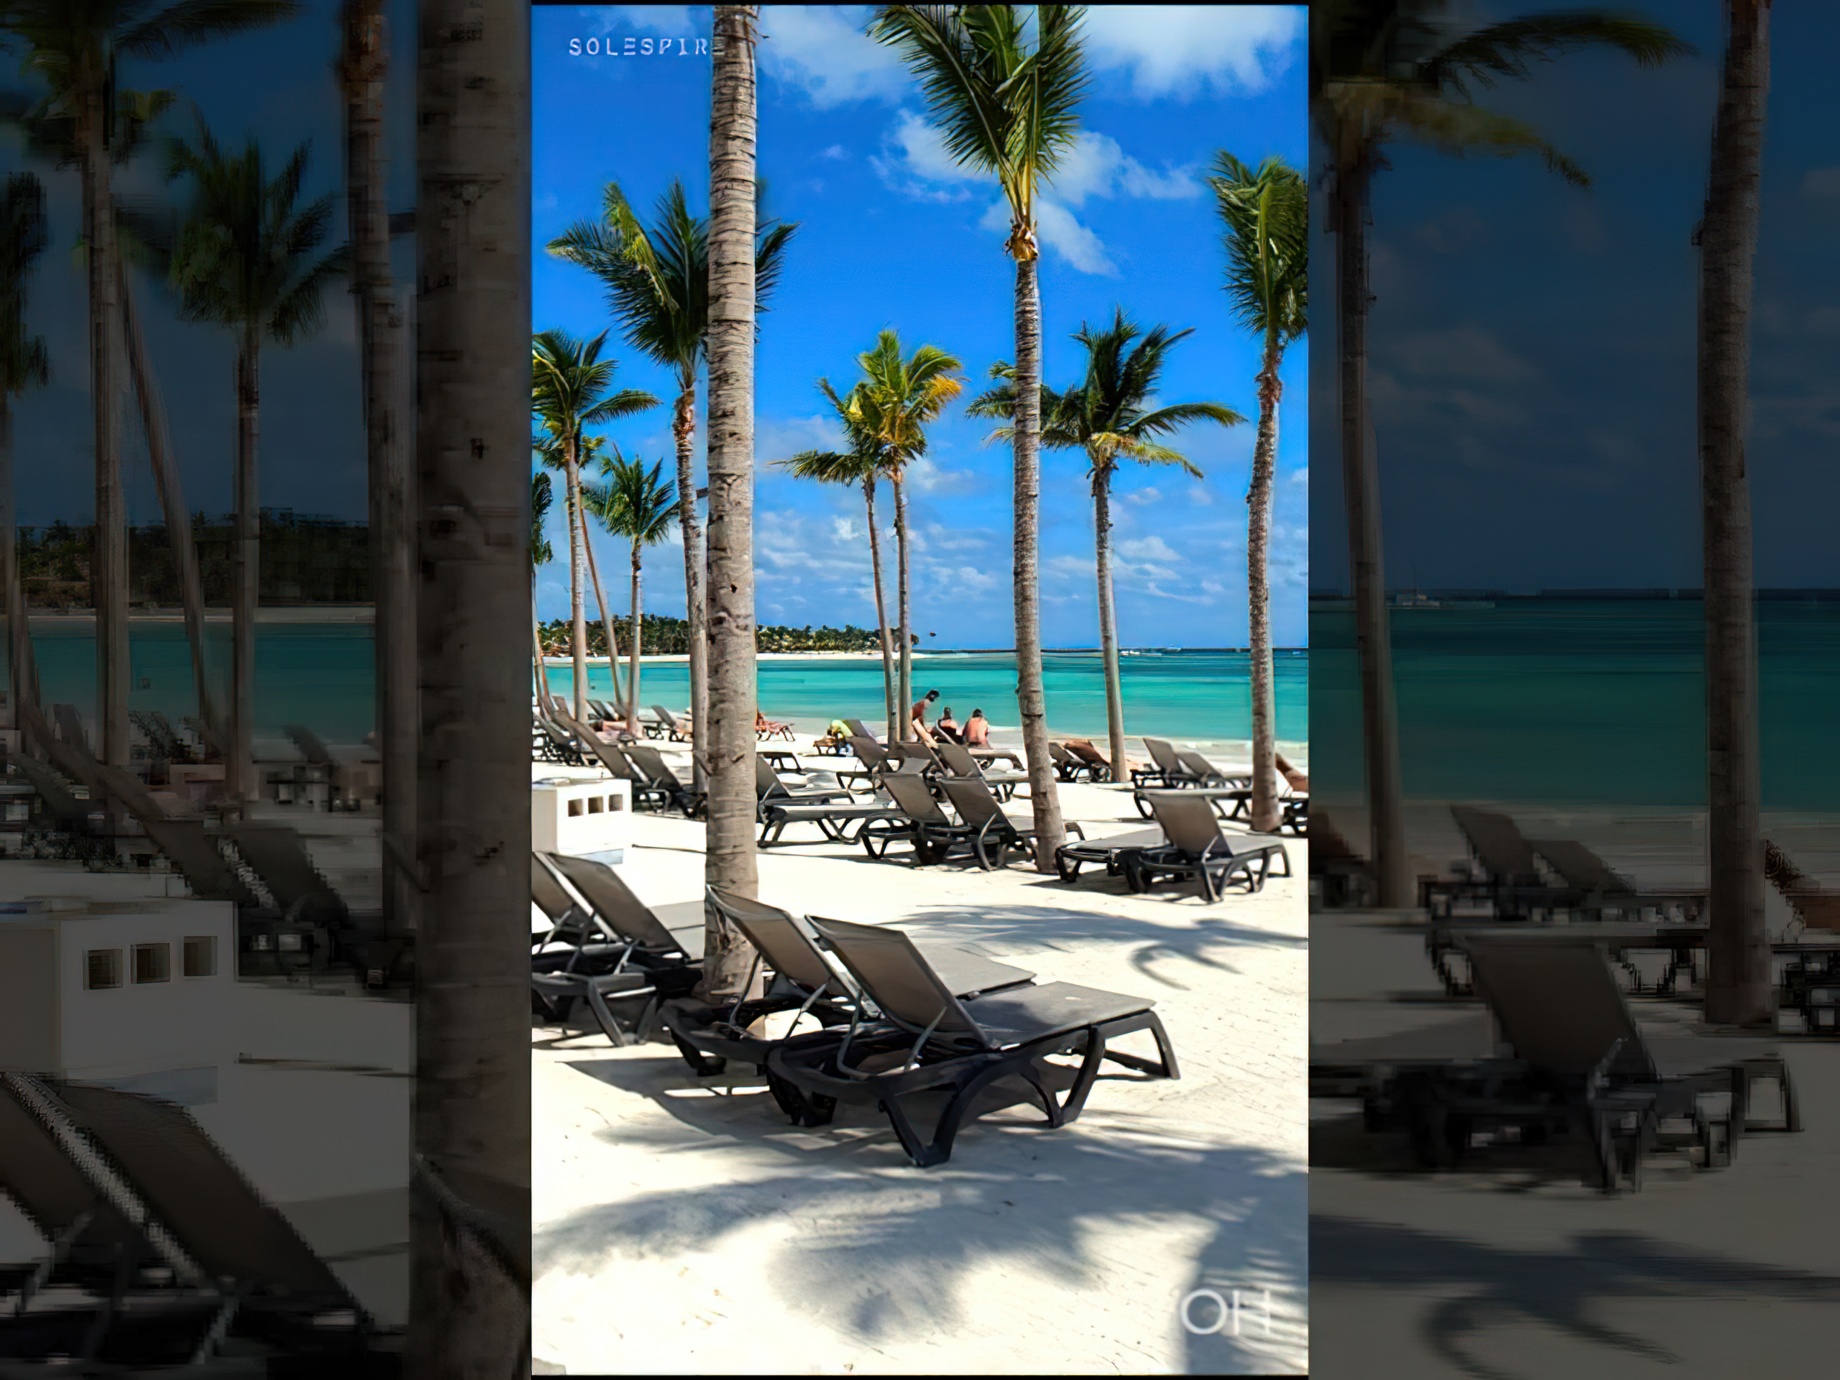 Mexico Beach Luxury Resort - Barcelo Maya Riviera, Quintana Roo - 4K HD Travel #shorts